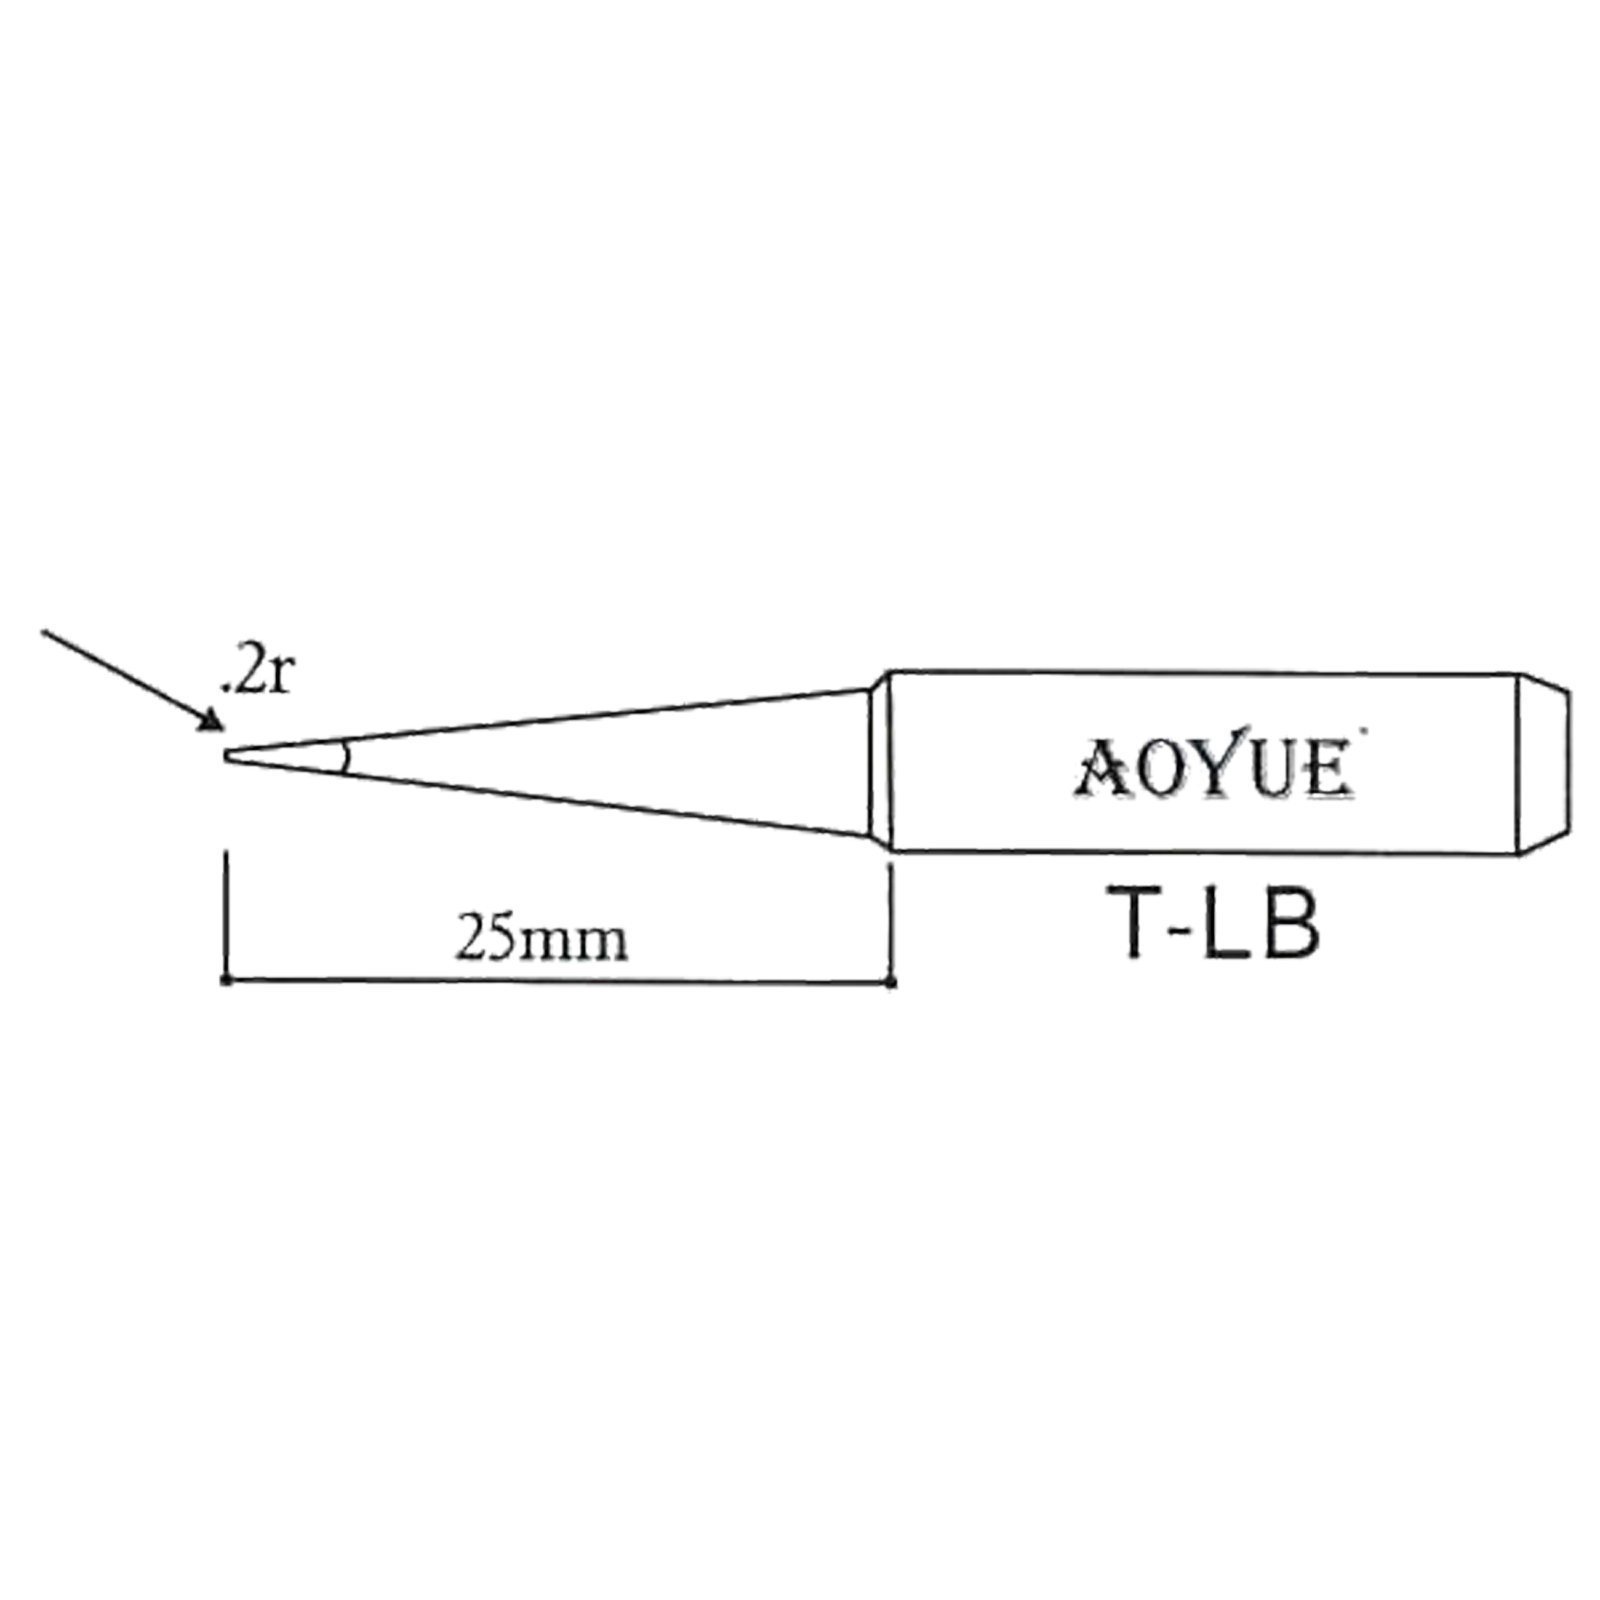 AOYUE T-LB Lötspitze für Lötkolben R 0.2mm